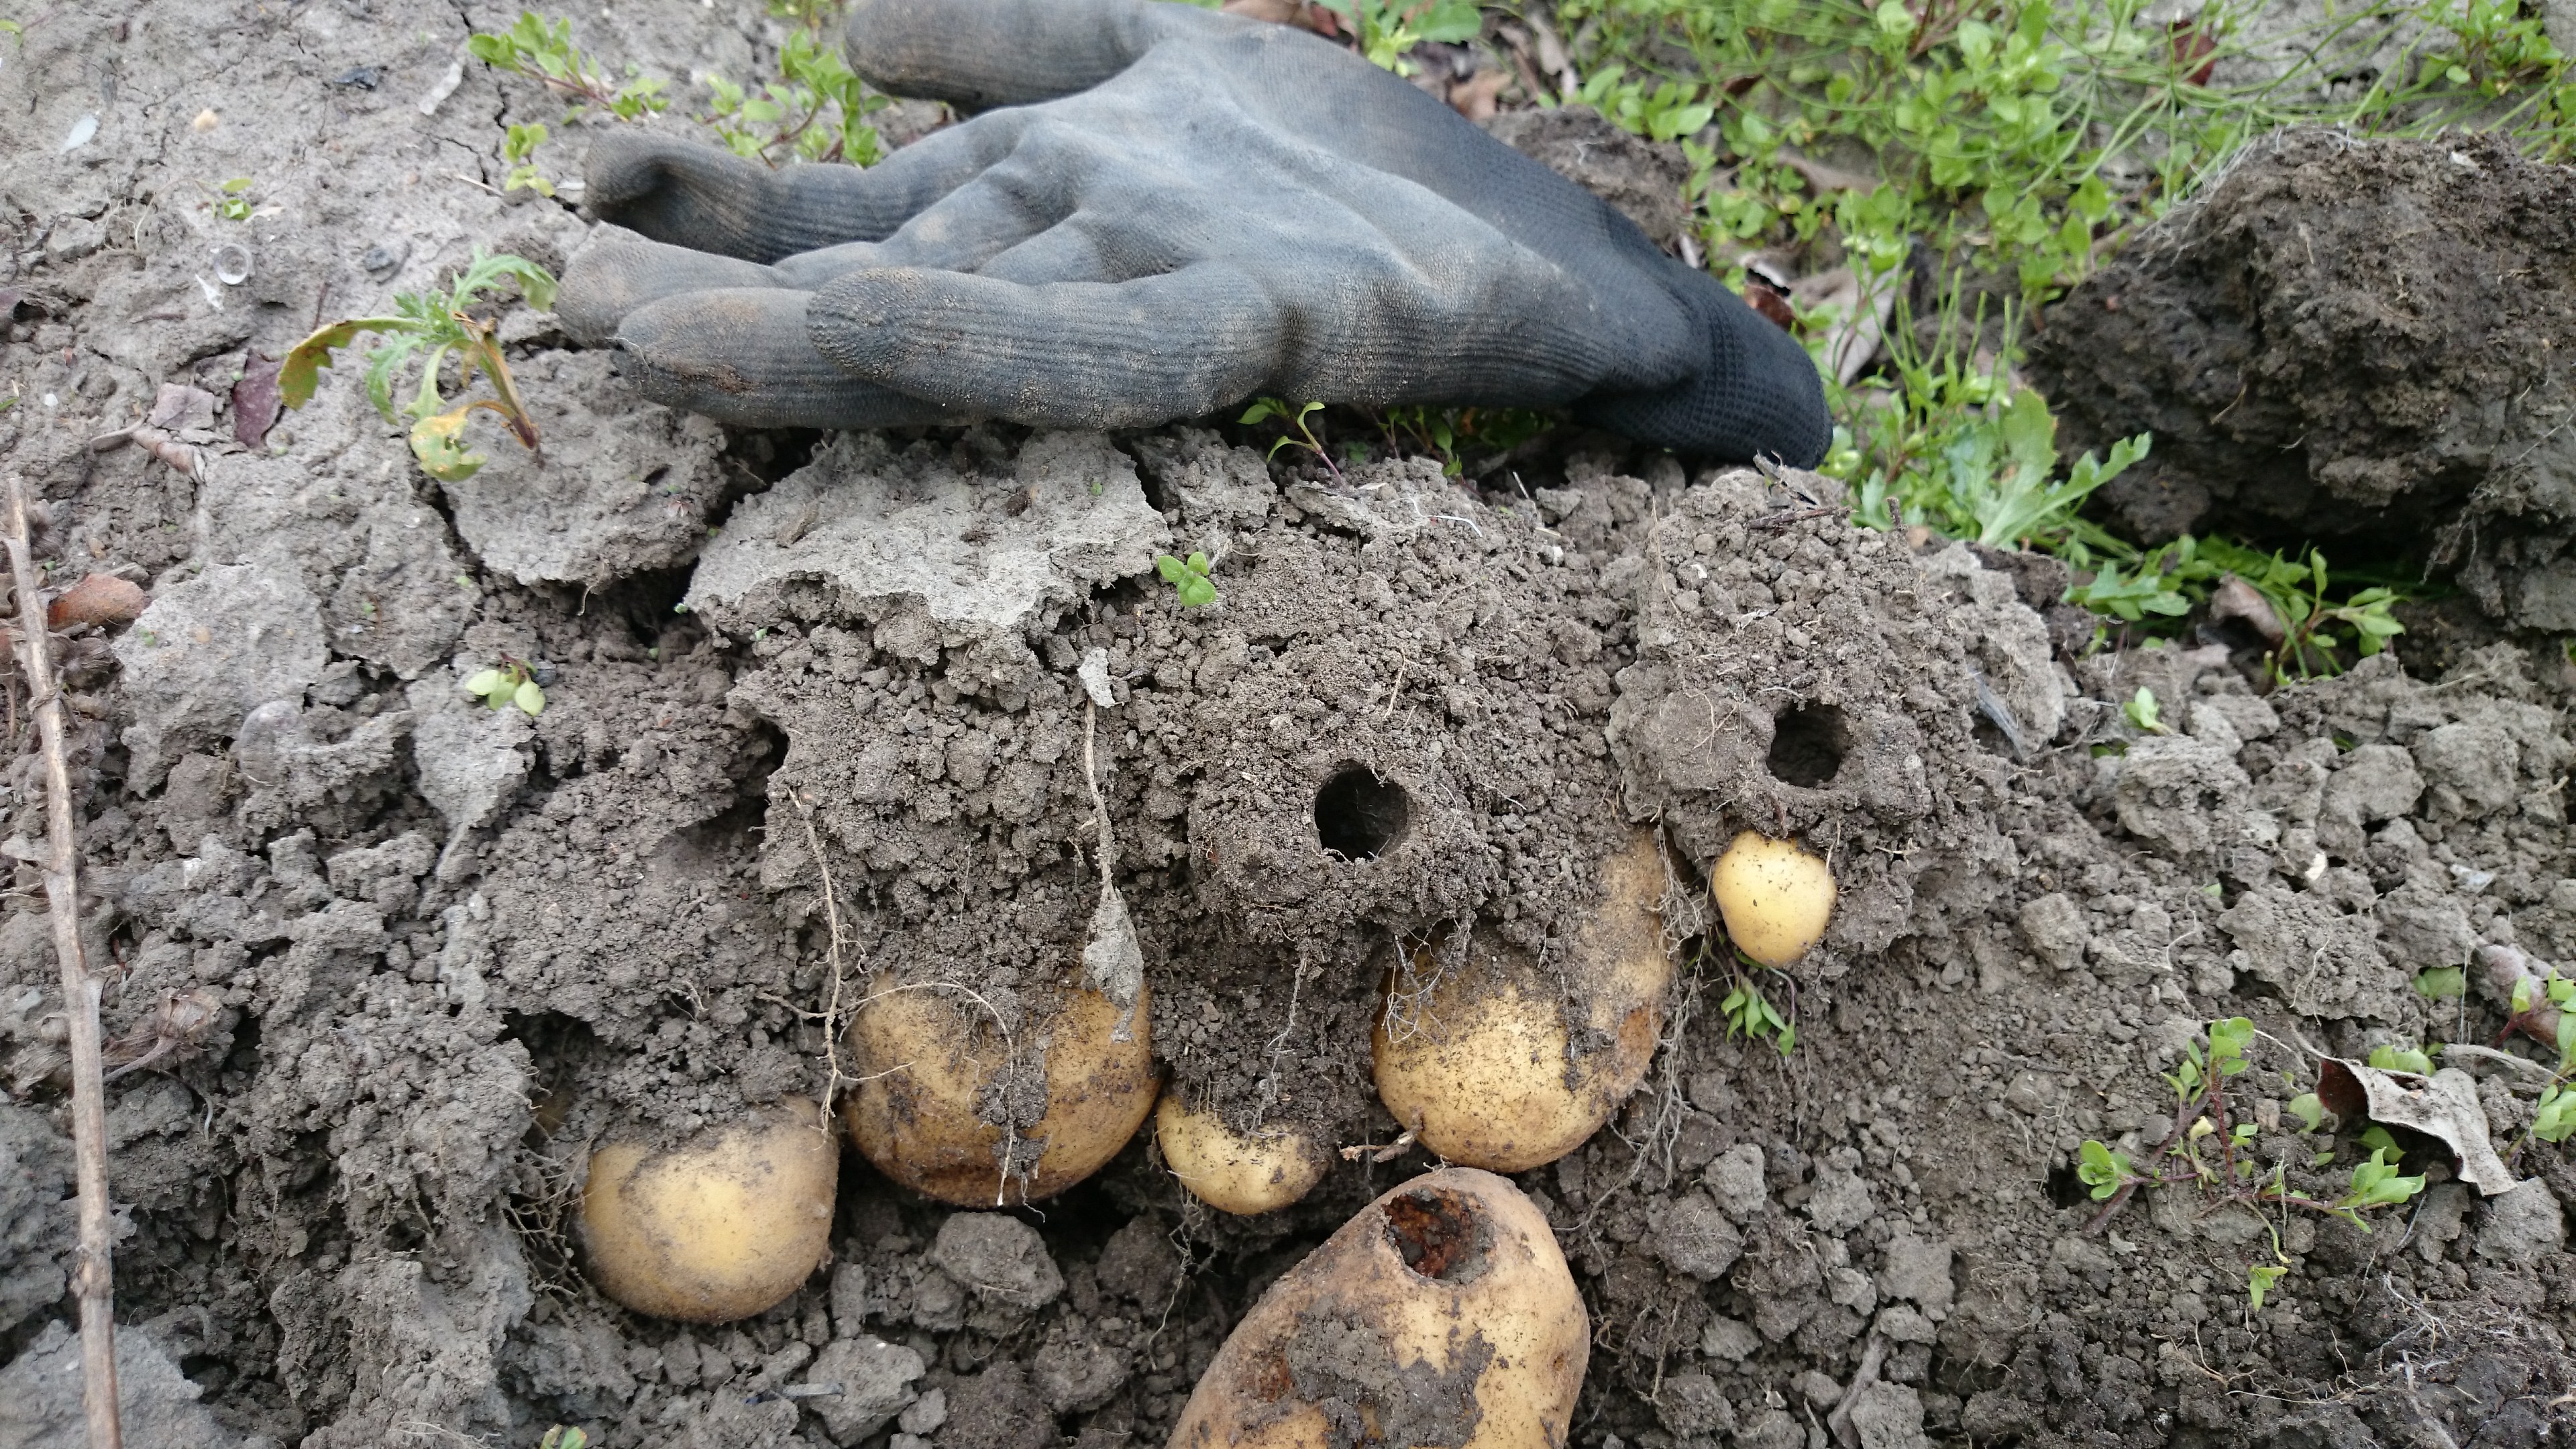 Veenmol gangen door de aardappels